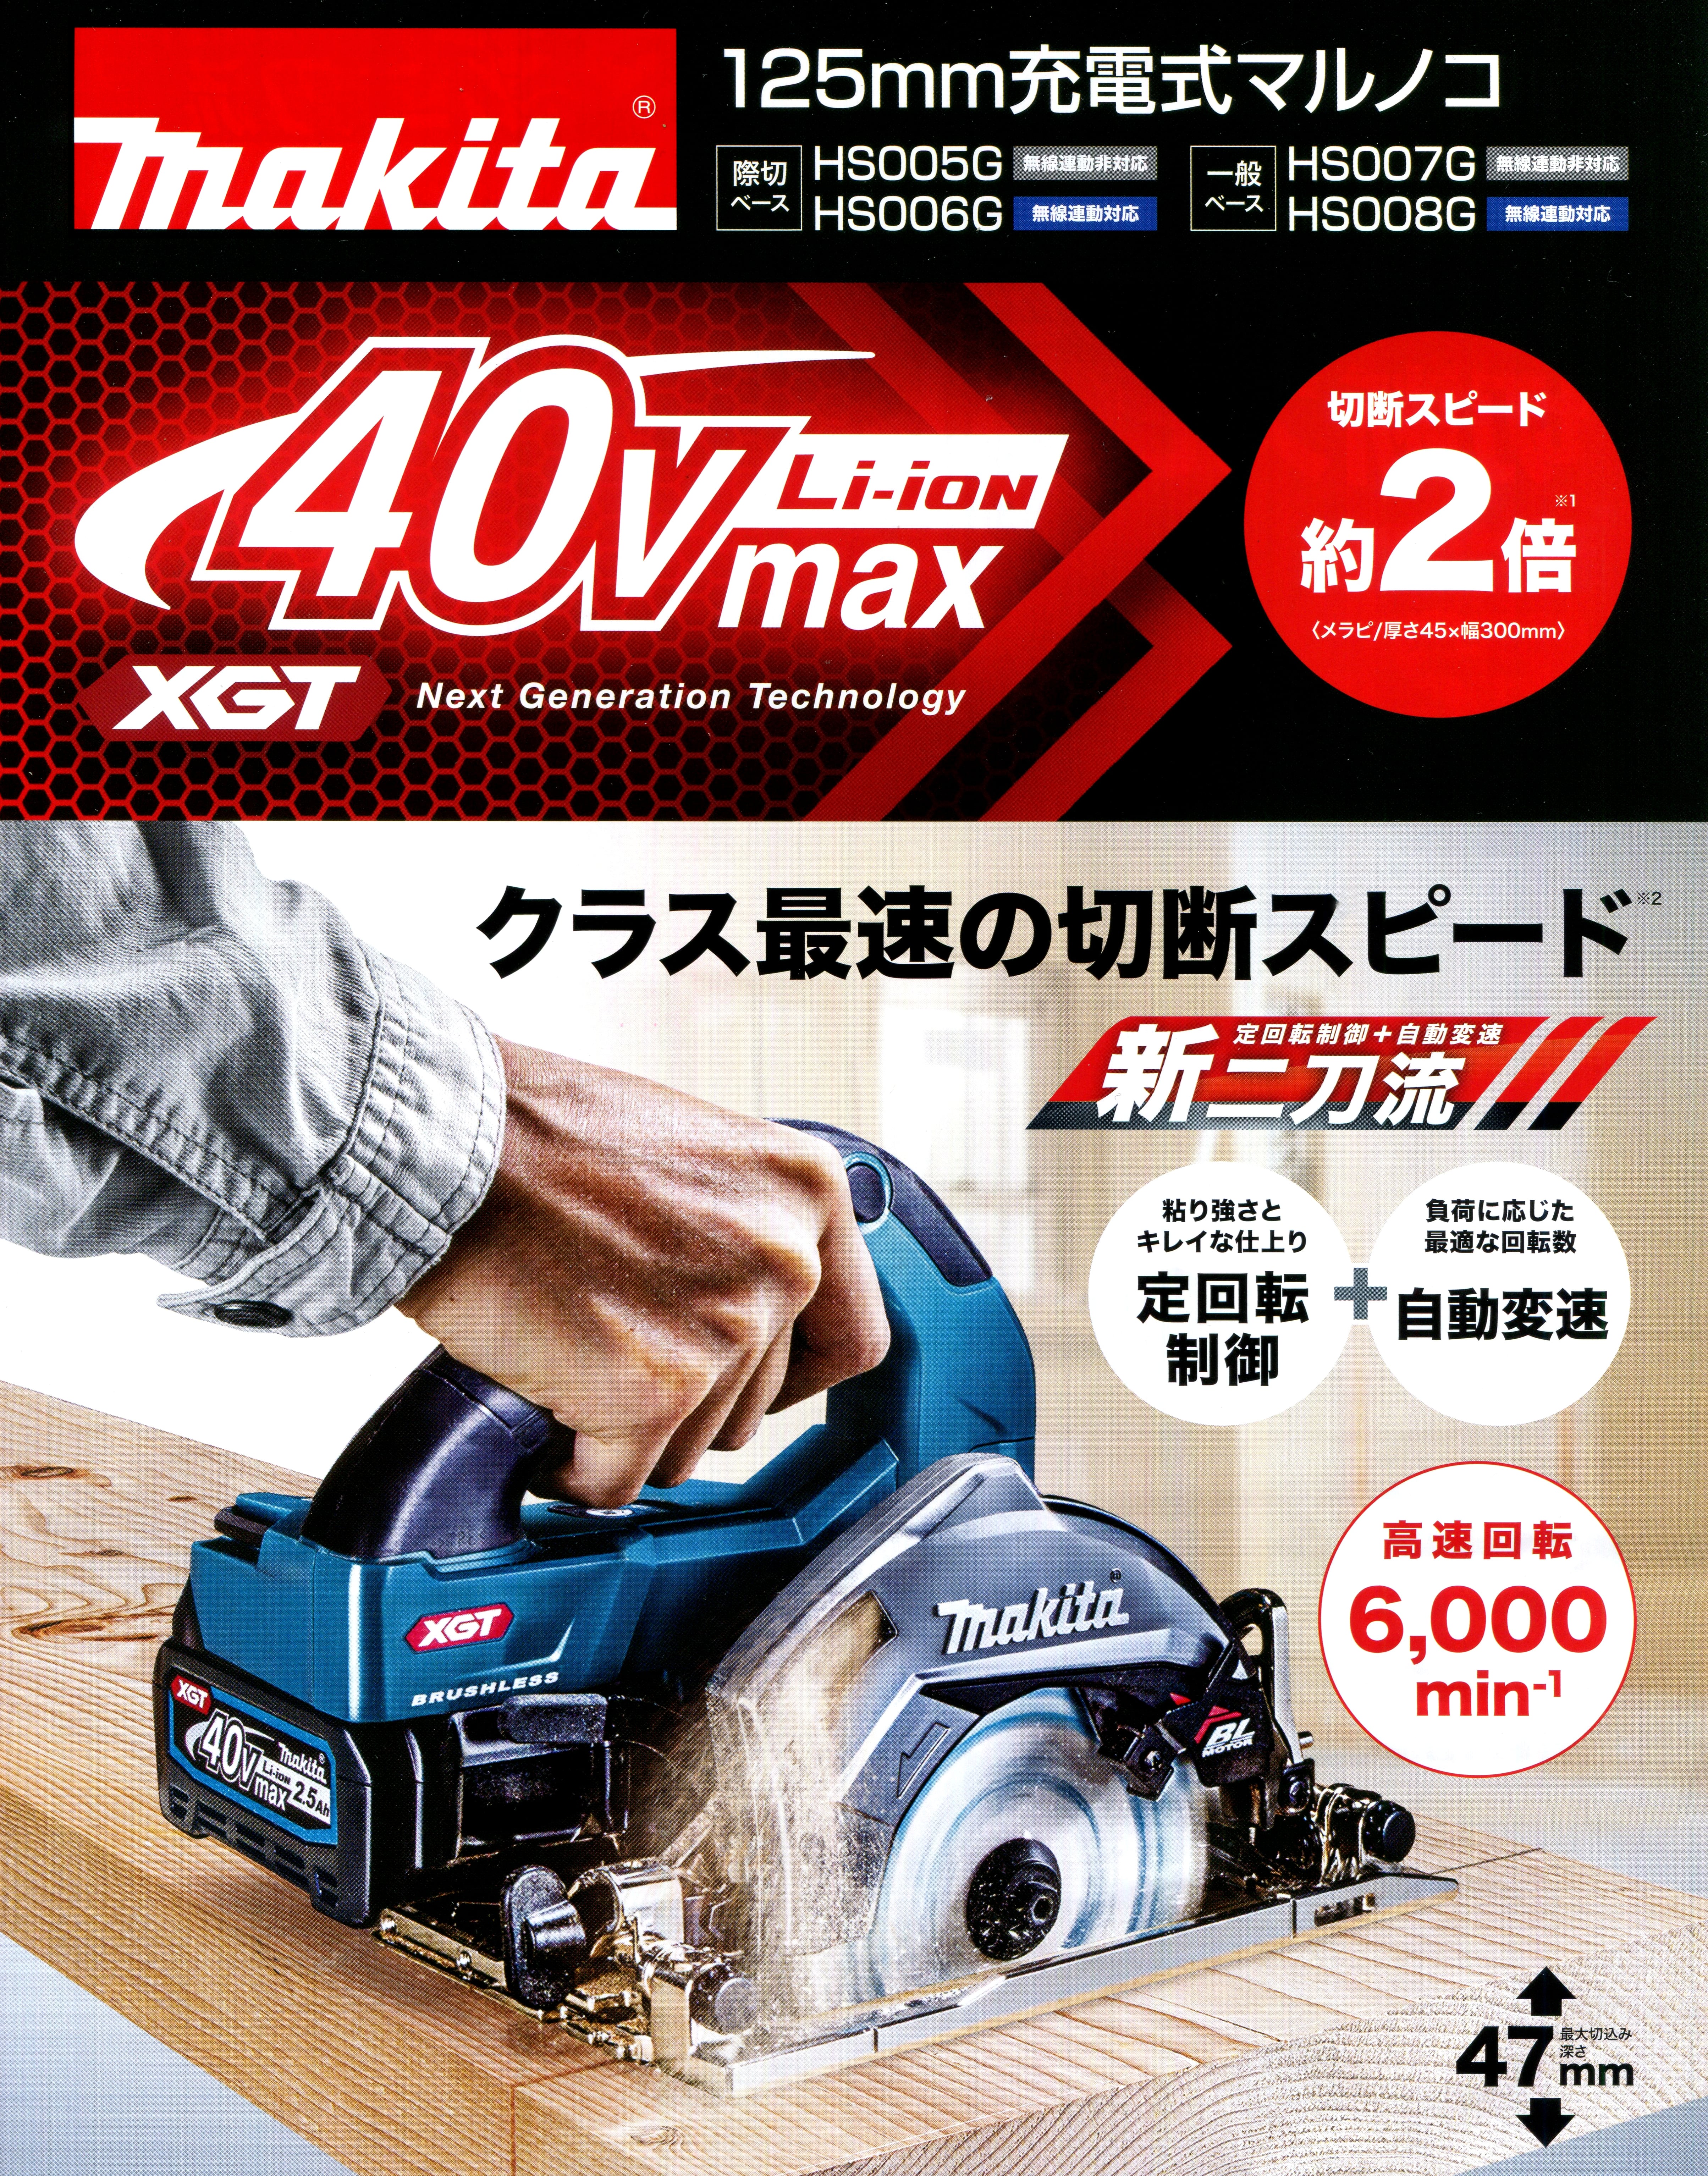 マキタ HS008GRDX 40Vmax充電式マルノコ 125mm【一般ベース】無線連動